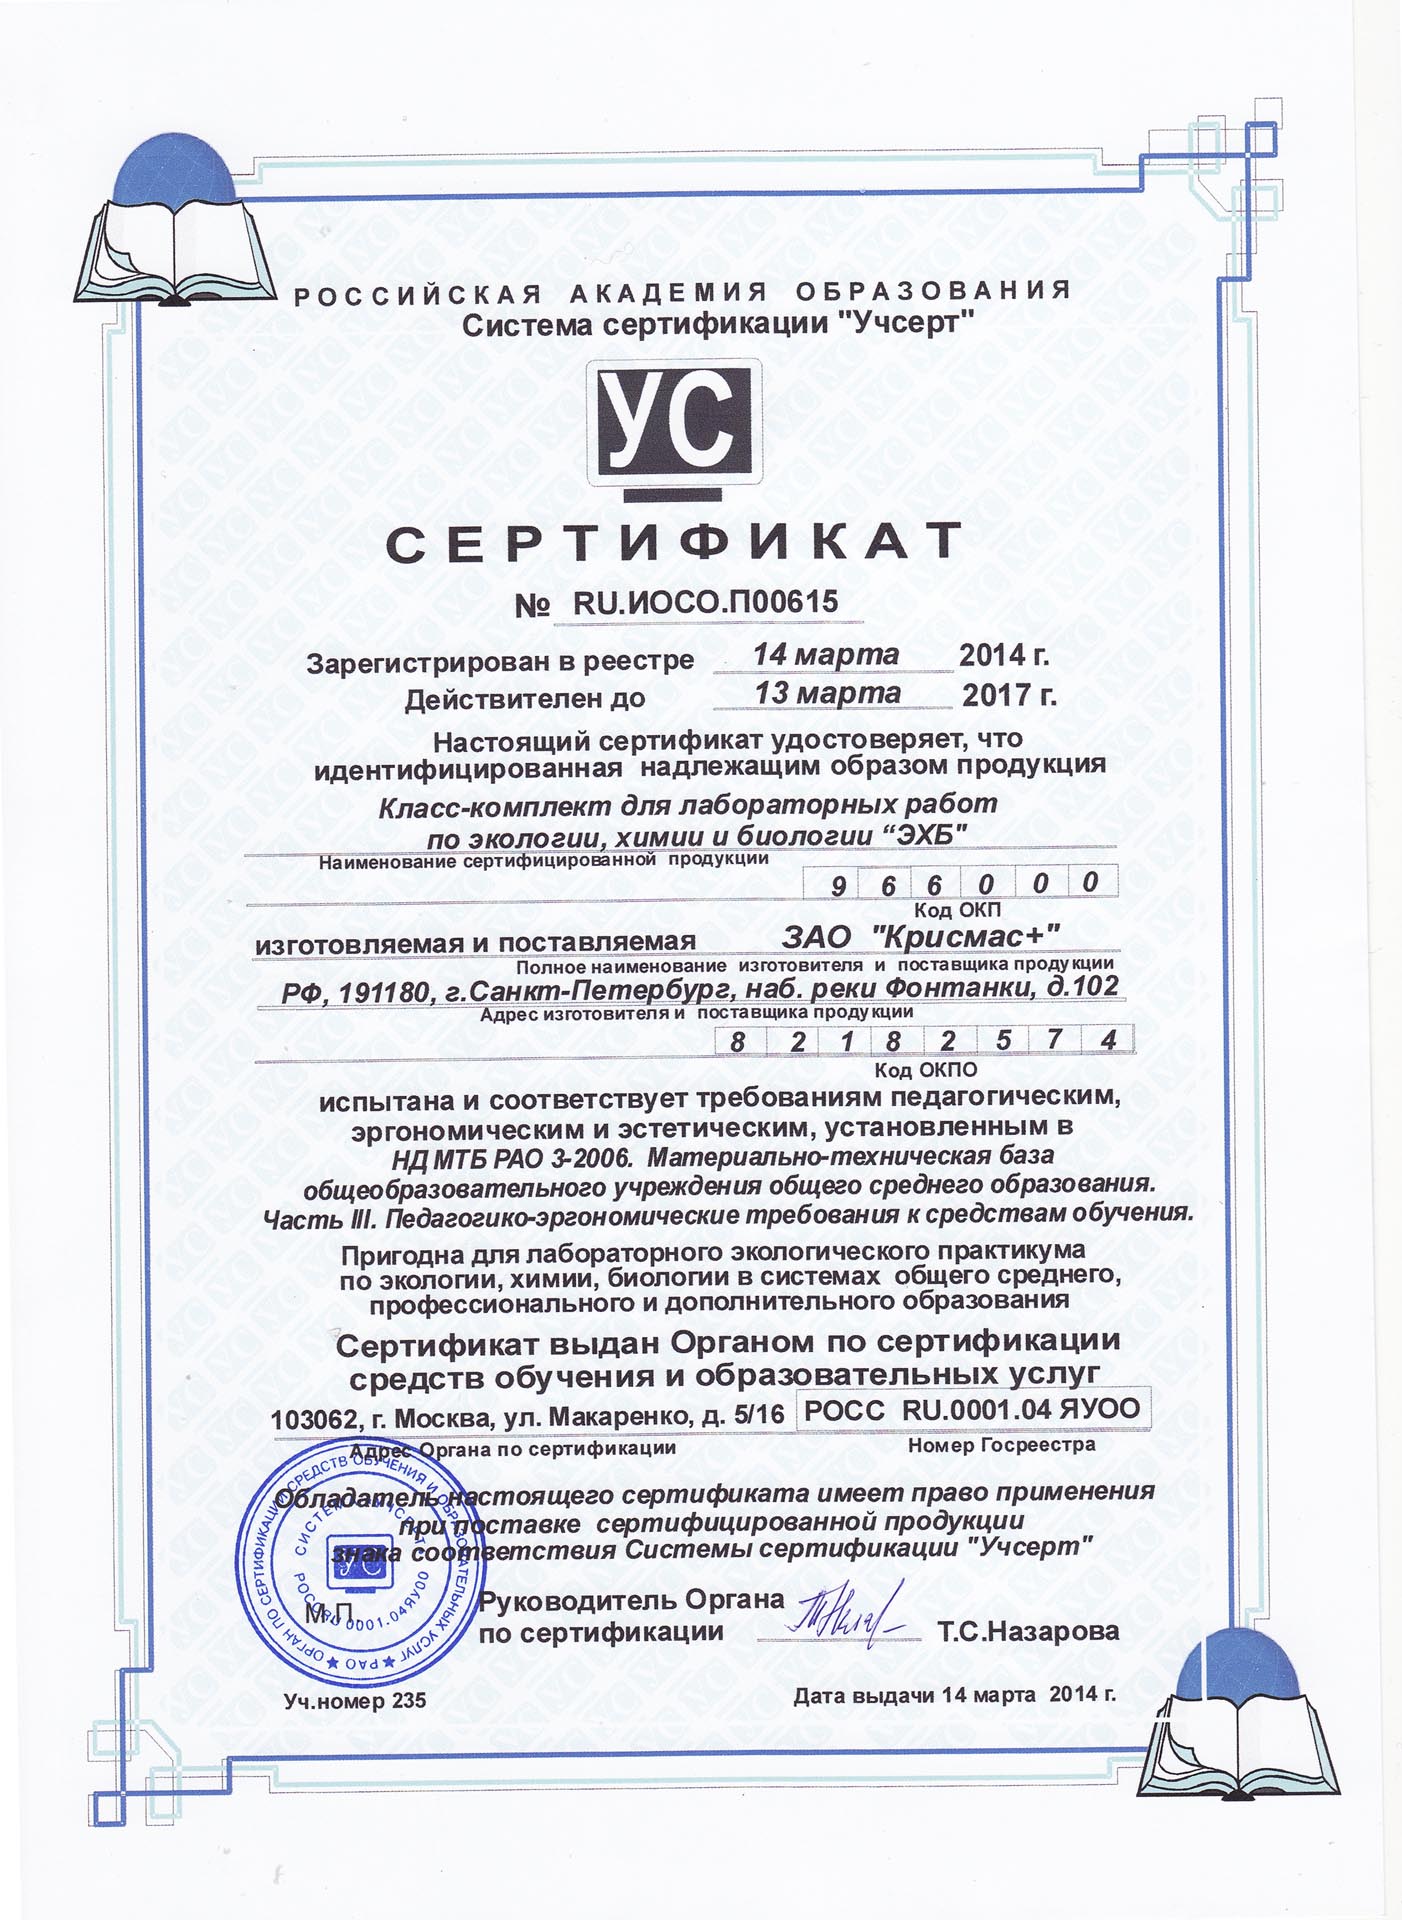 ehb-sertif-2014.jpg